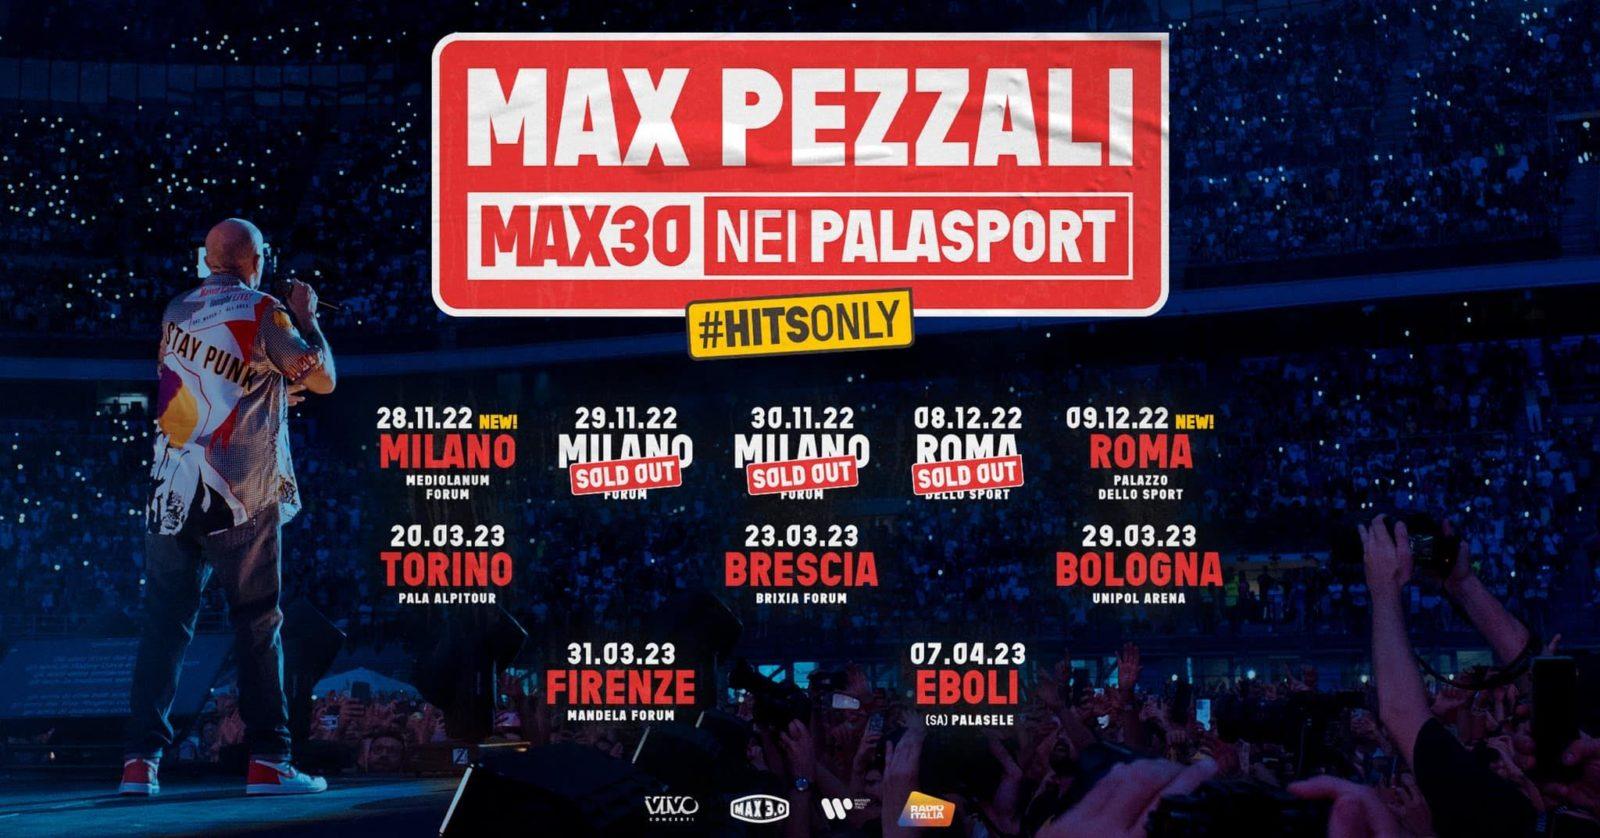 Max Pezzali al Pala Alpitour di Torino